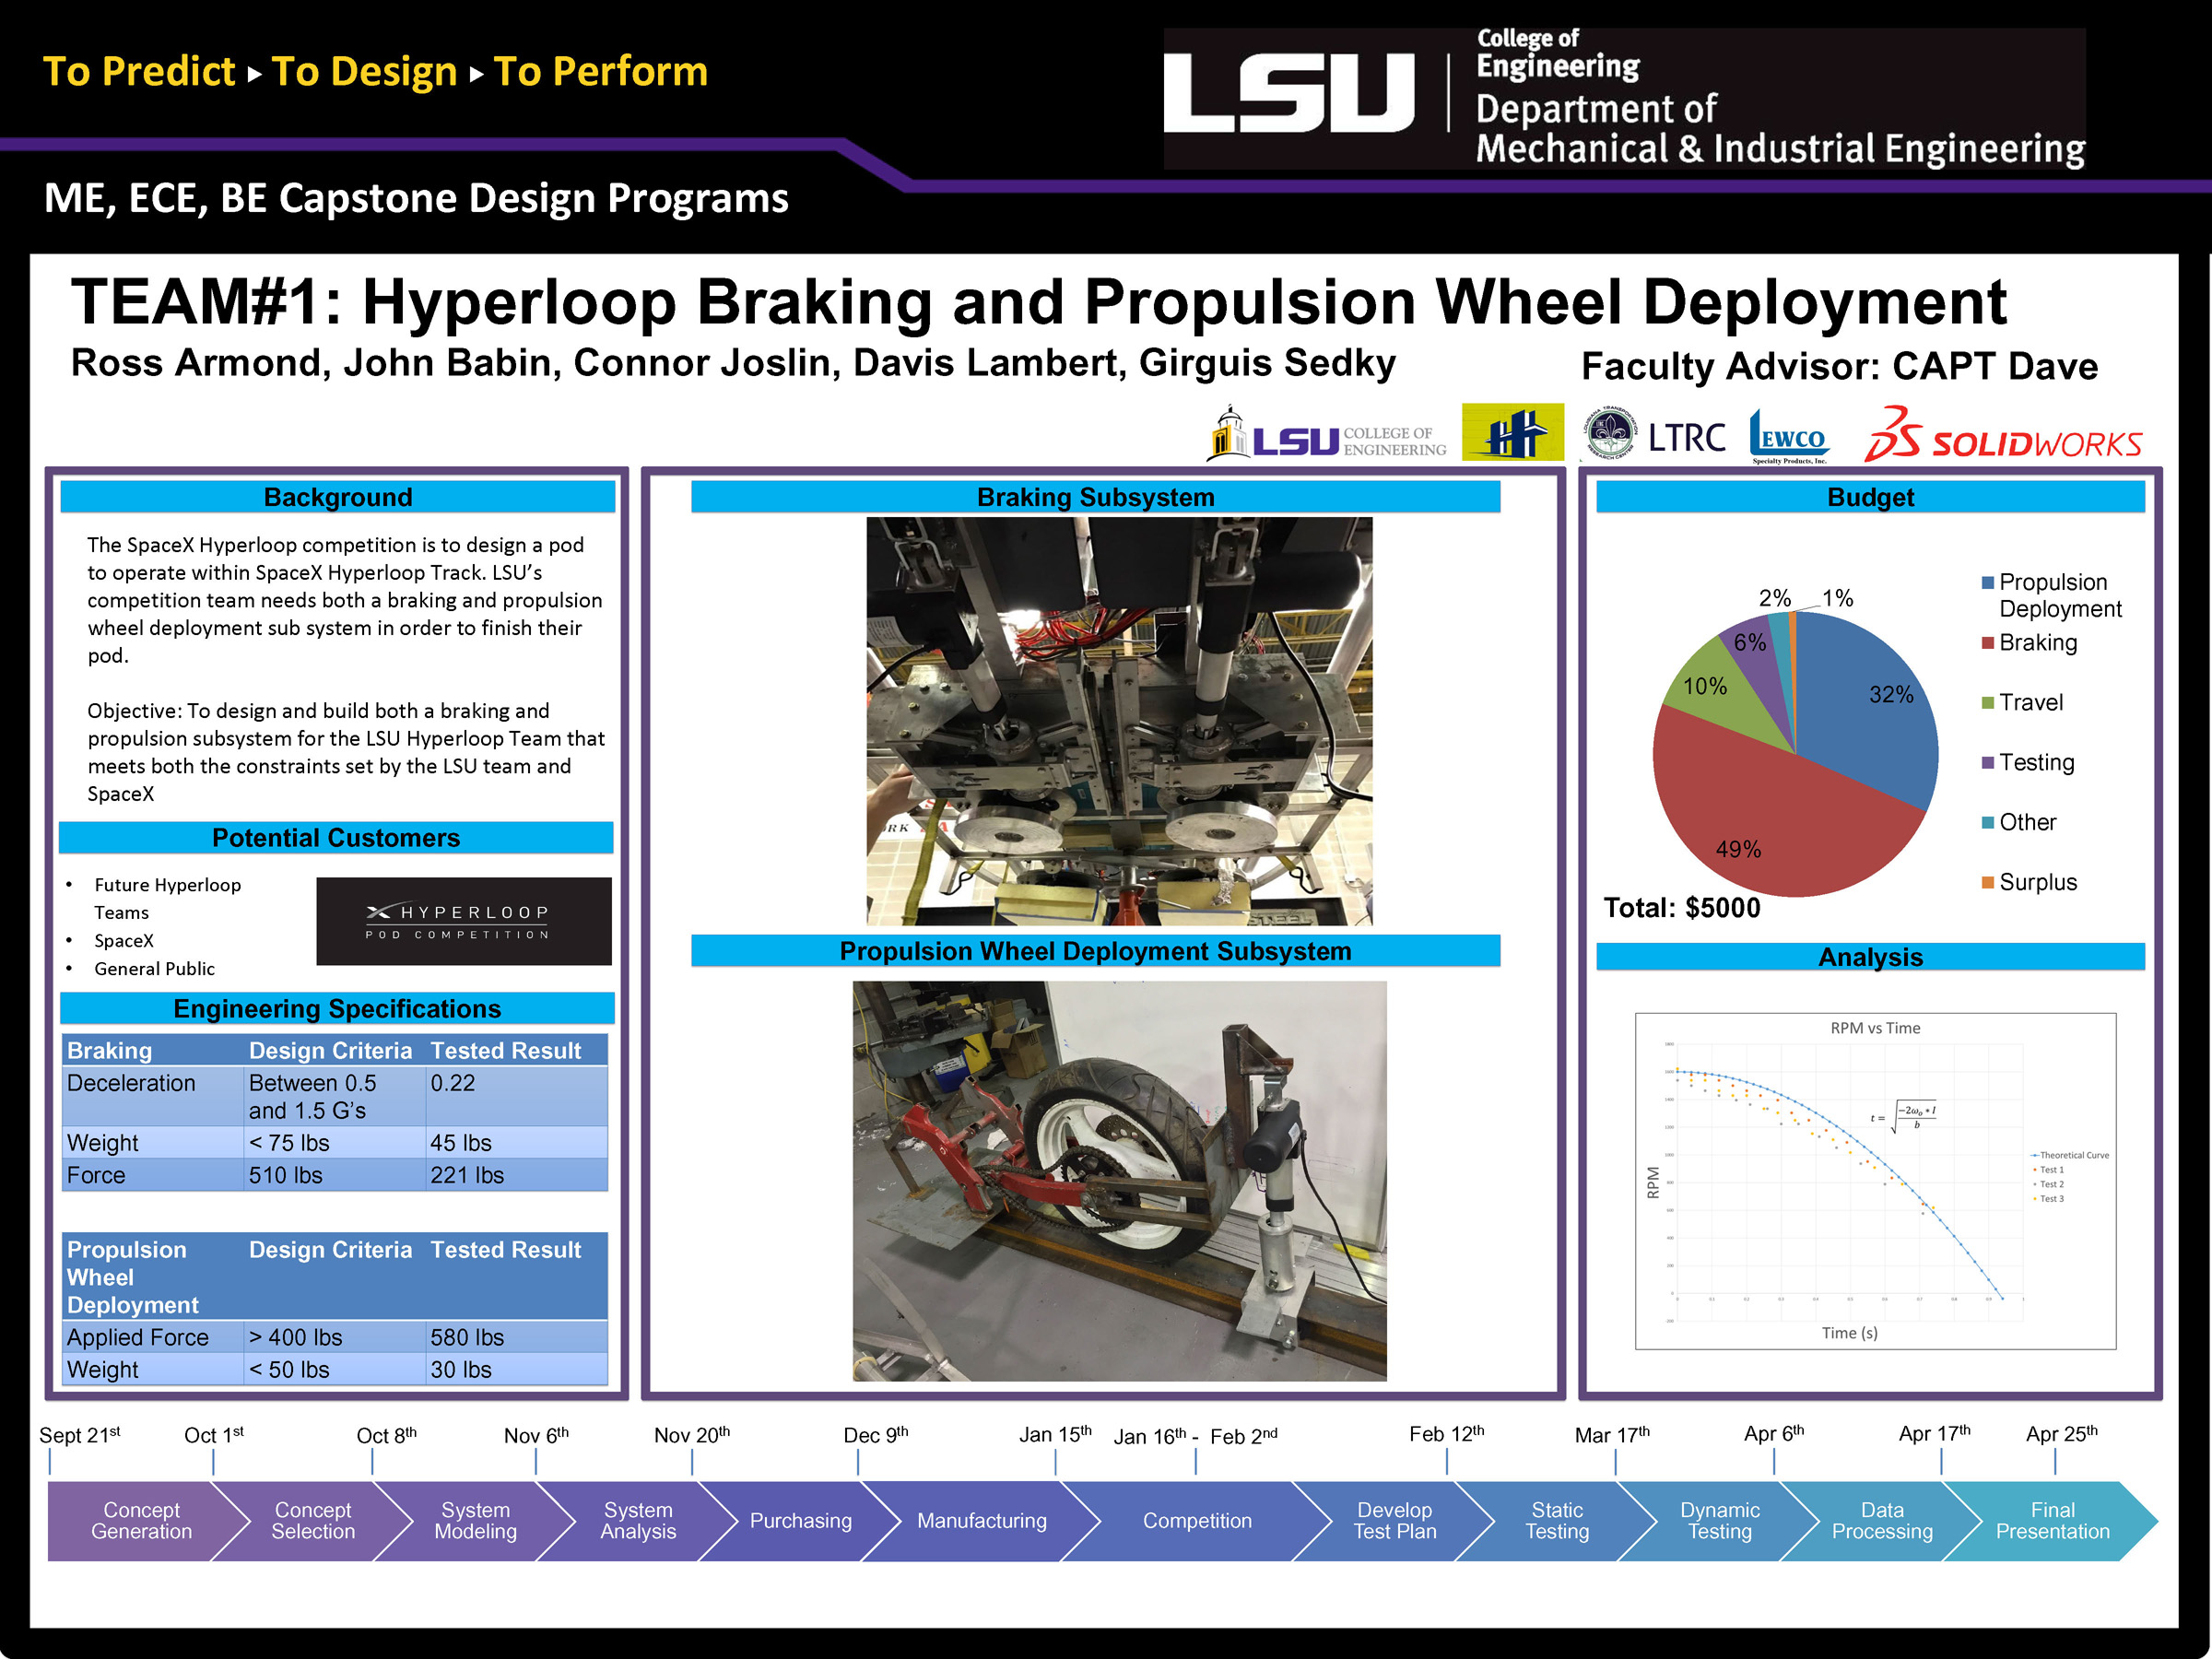 Project 1: Hyperloop Breaks and Propulsion